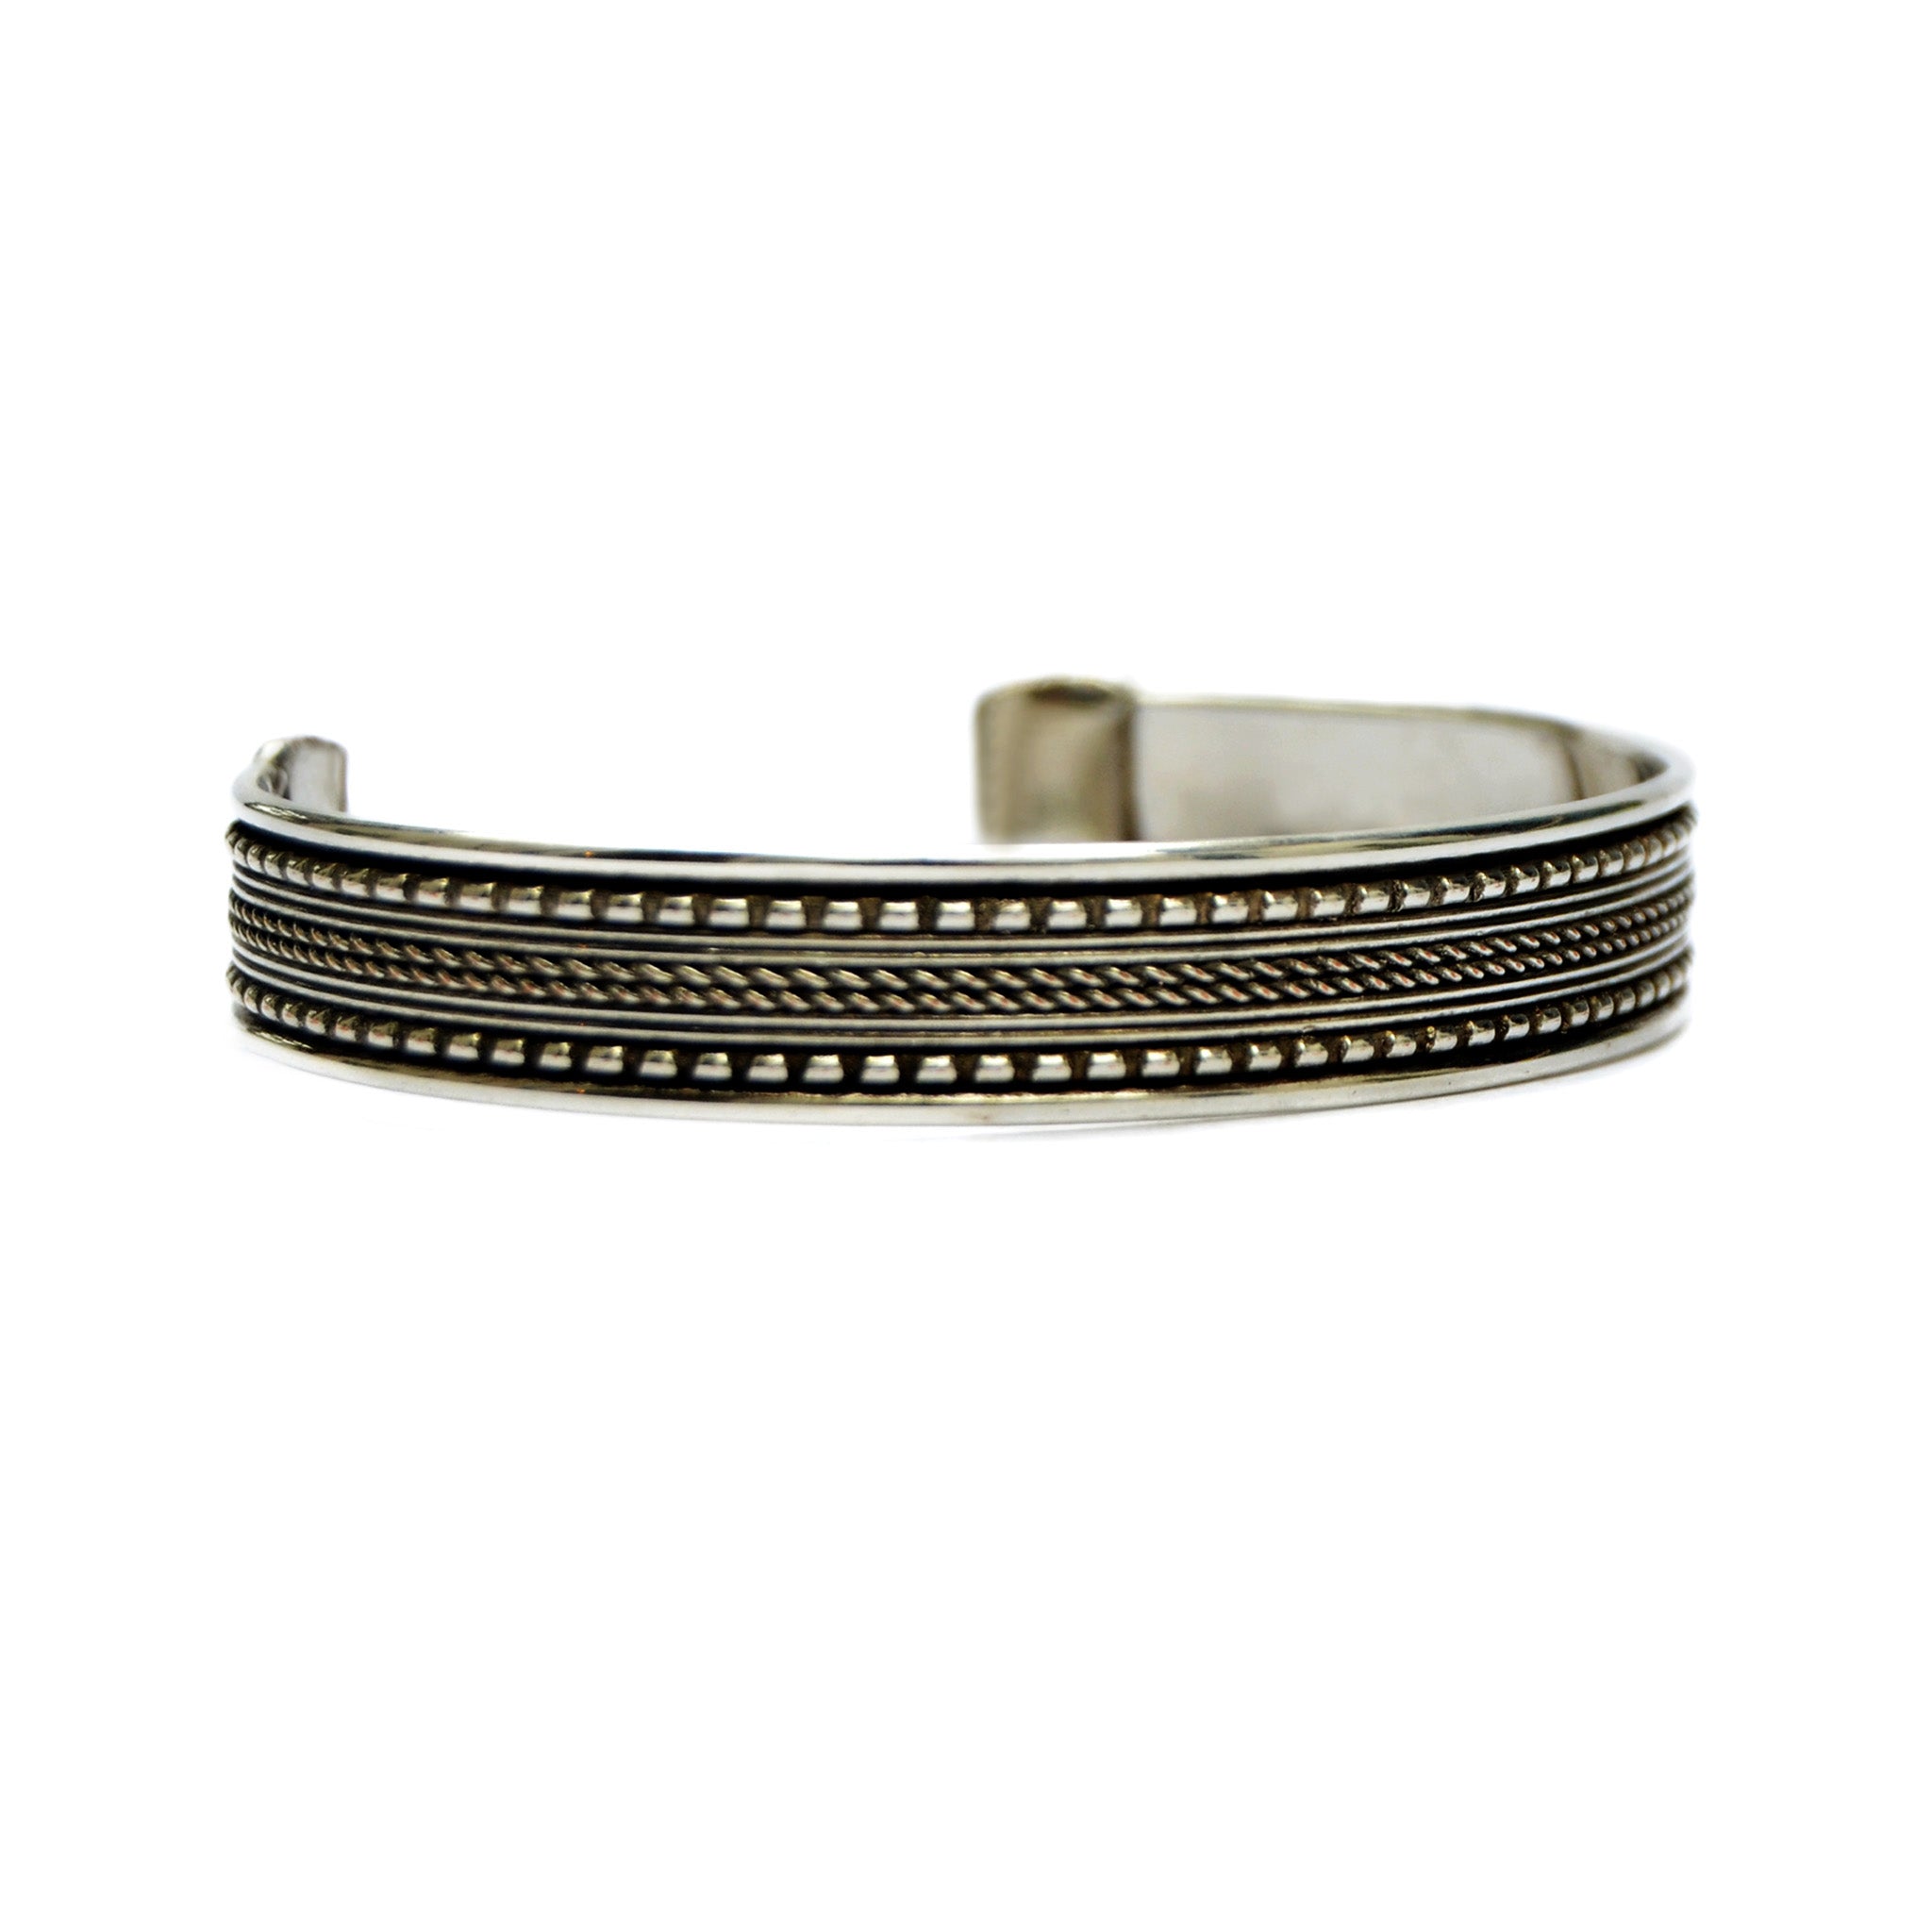 Bohemian silver bracelet